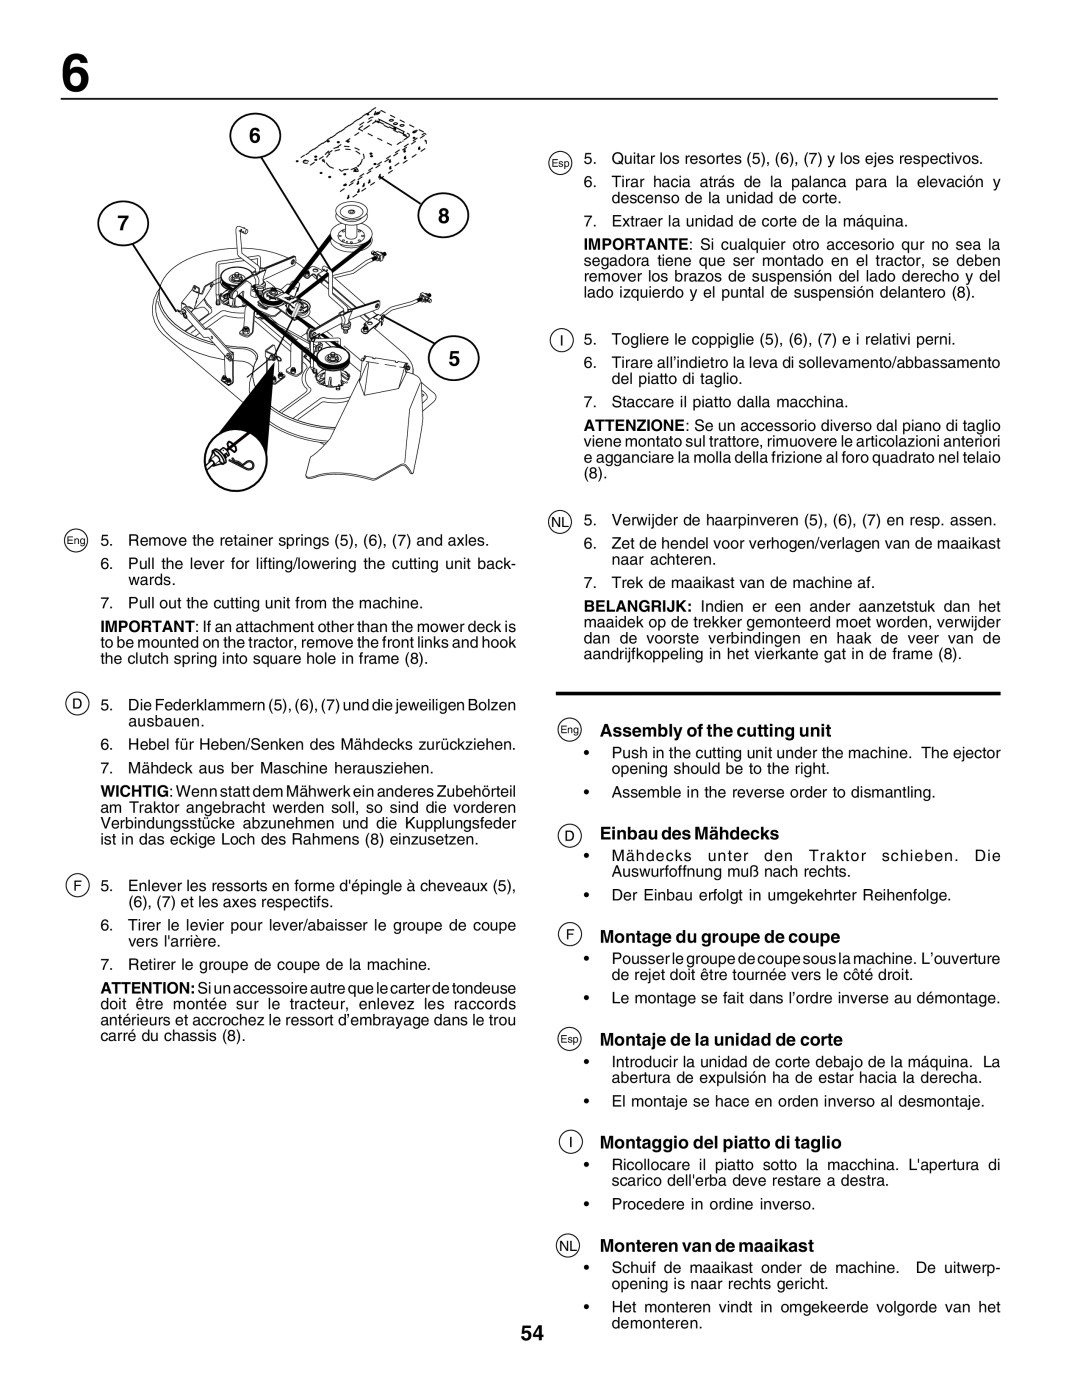 Husqvarna LT125 instruction manual Eng Assembly of the cutting unit, Einbau des Mähdecks, F Montage du groupe de coupe 